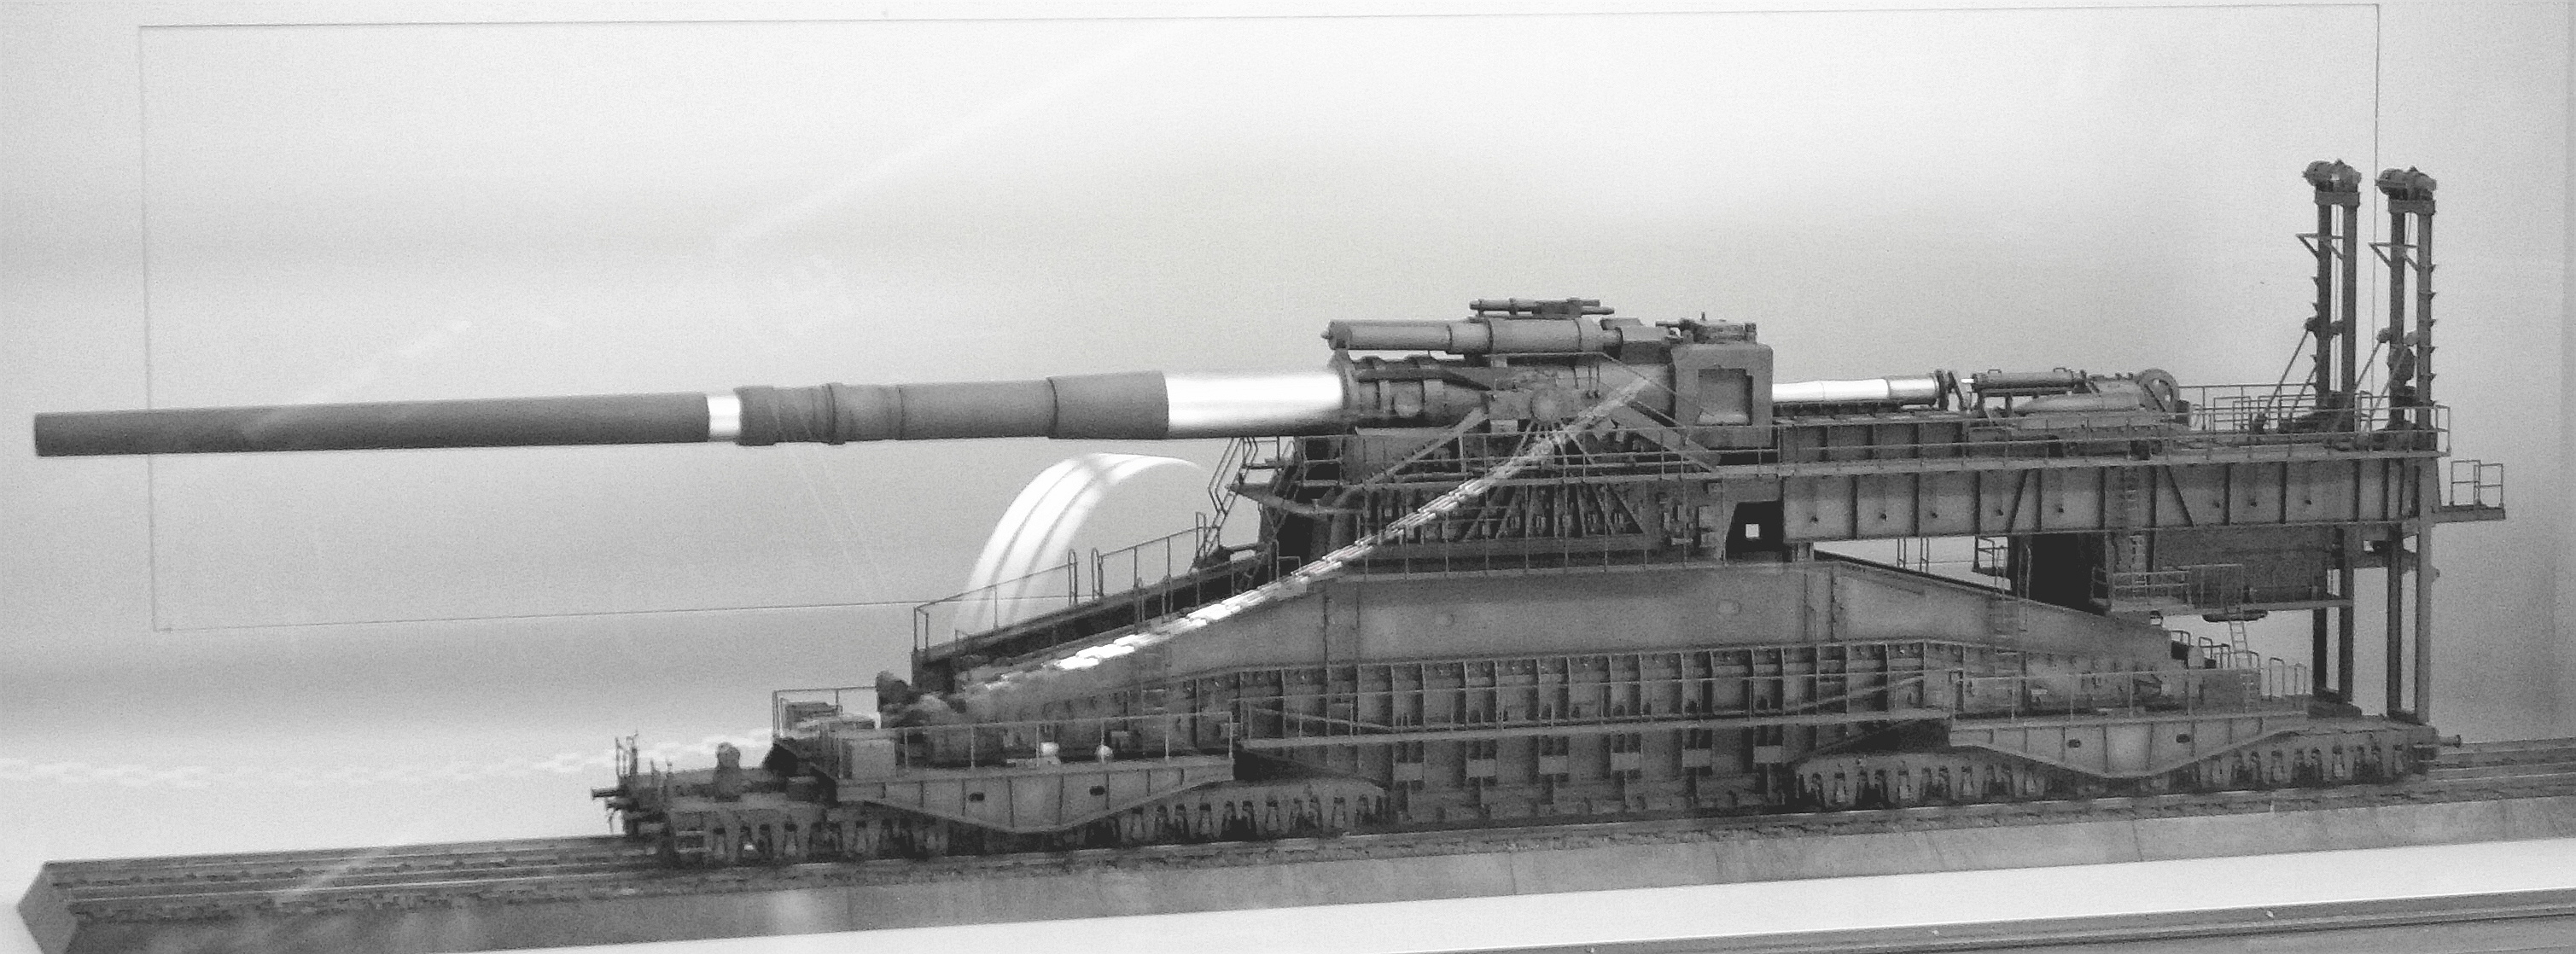 Schwerer Gustav railway gun unknown date or location Framed Print